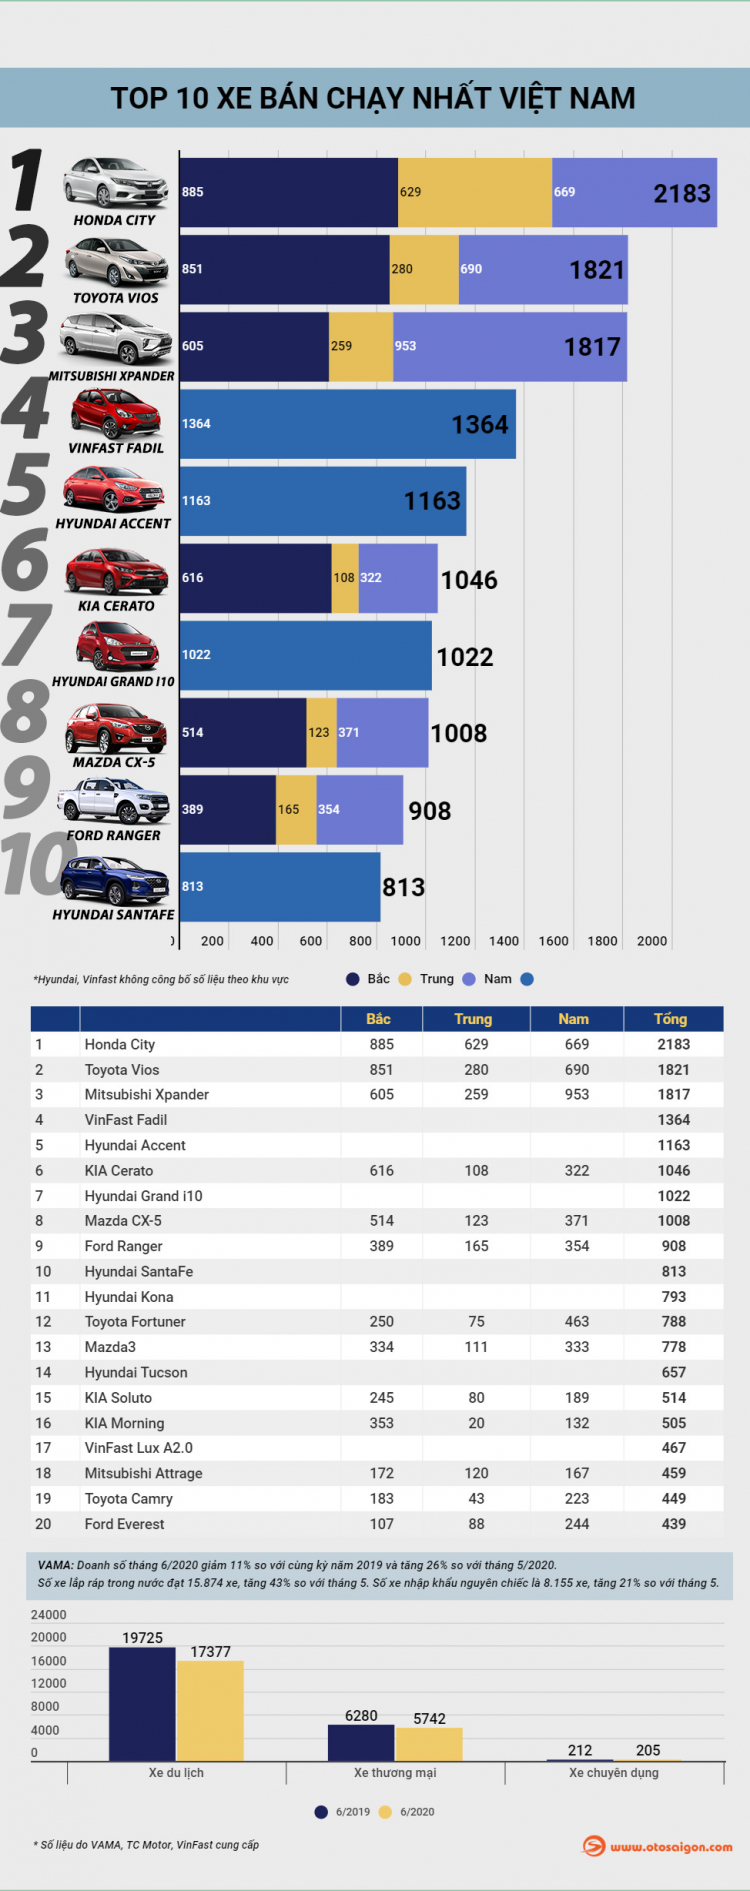 [Infographic] Top 10 xe bán chạy tại Việt Nam tháng 6/2020: Honda City bất ngờ đứng đầu